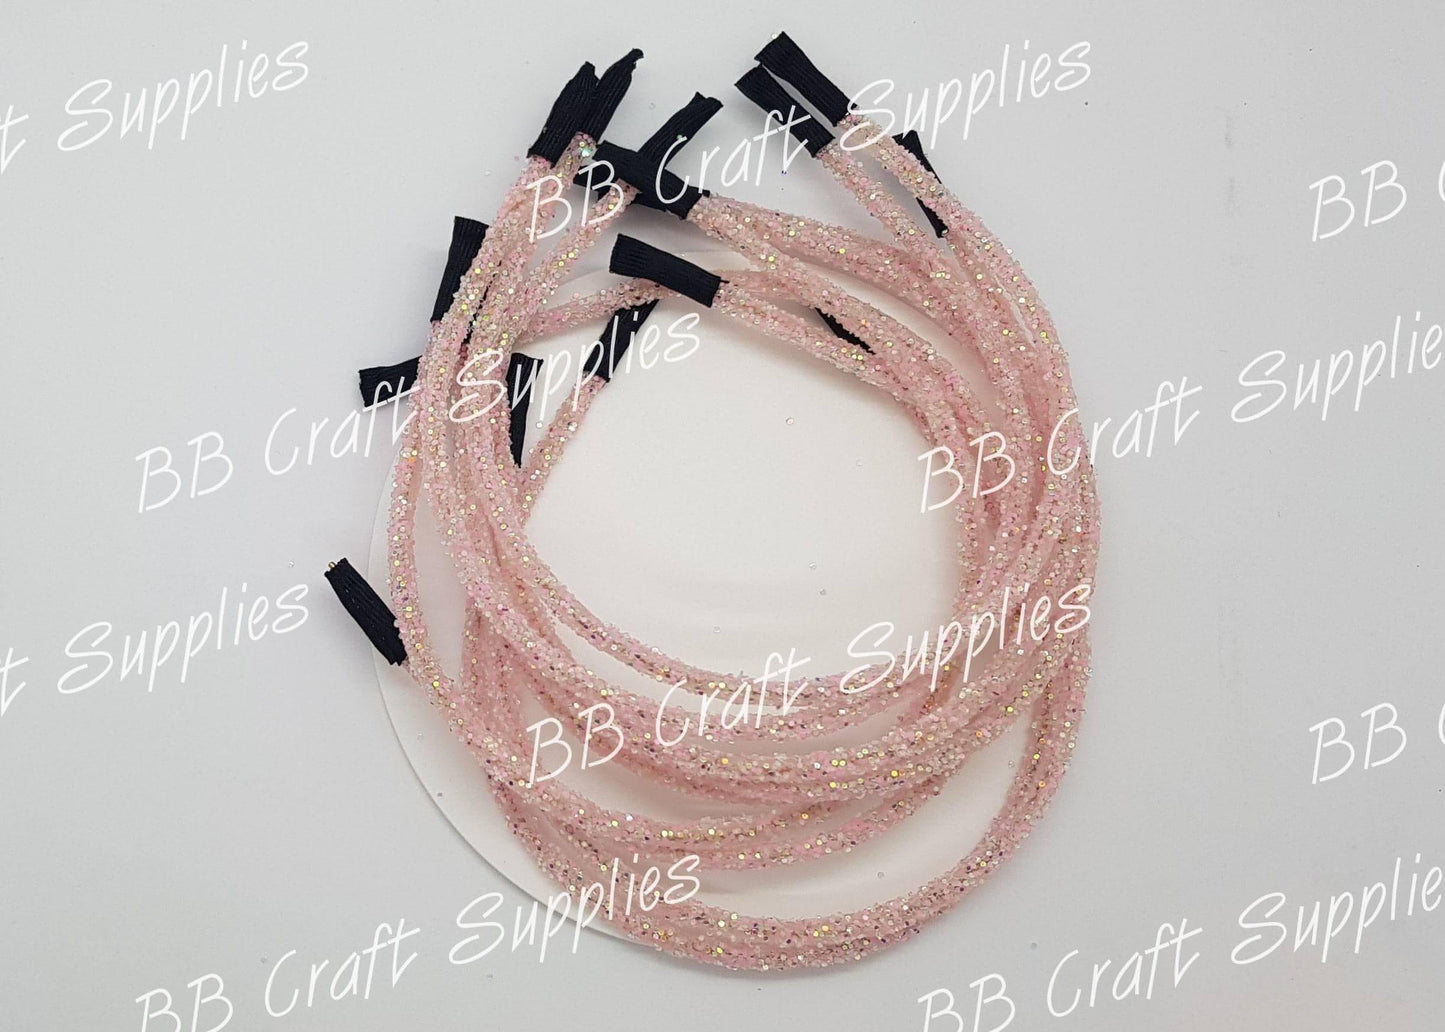 Glow in the Dark Headband - Pink - Accessories, GITD, Glow in the dark, Headband - Bare Butler Faux Leather Supplies 